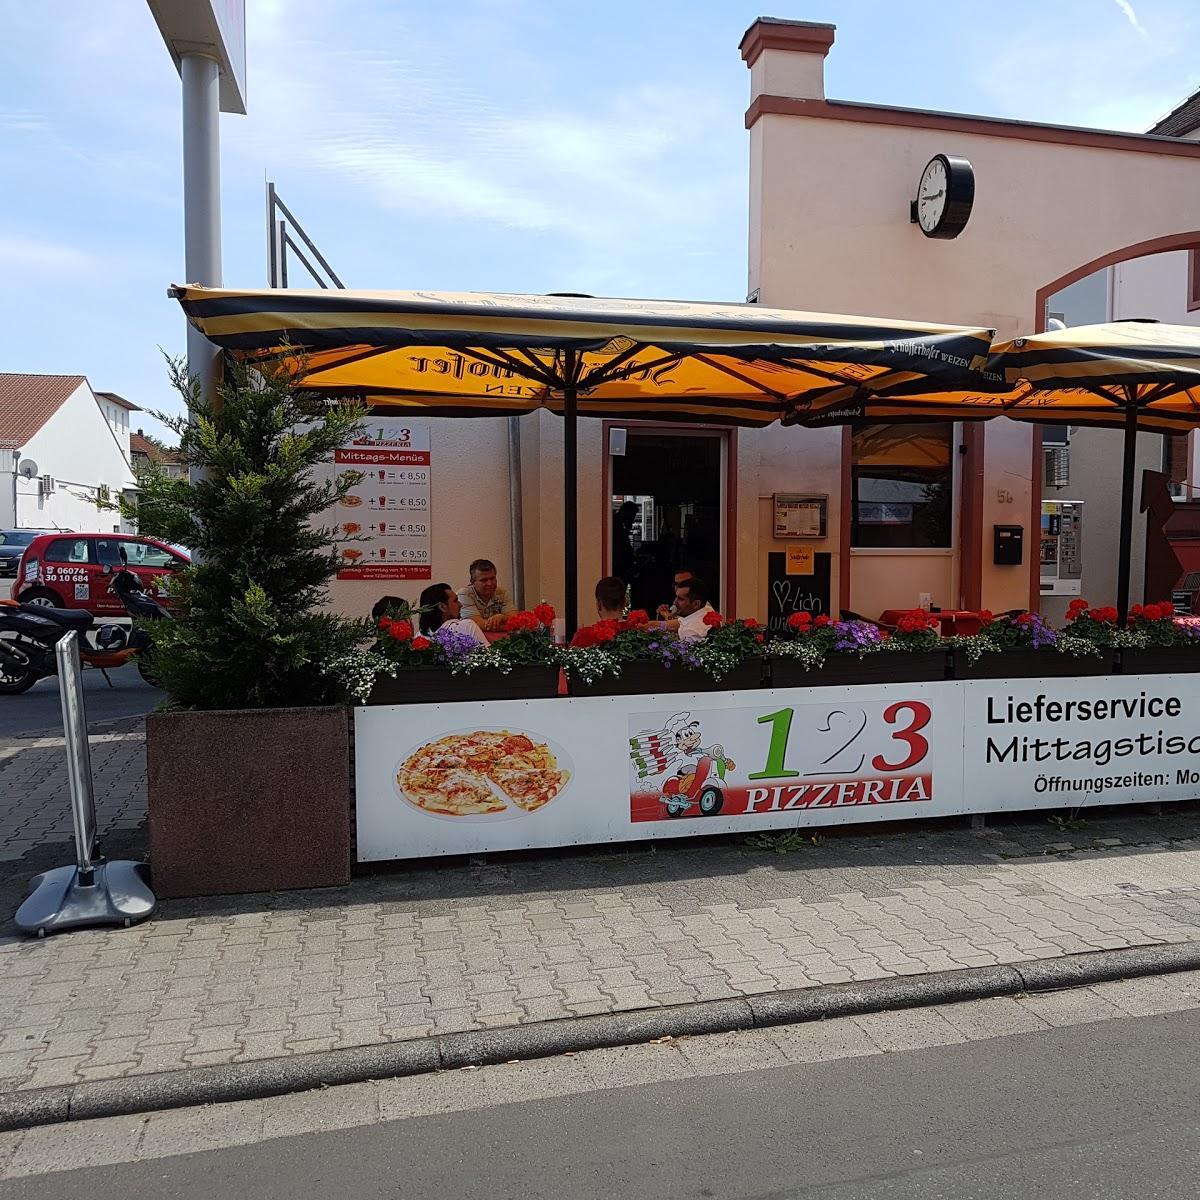 Restaurant "123 Pizzeria" in Rödermark